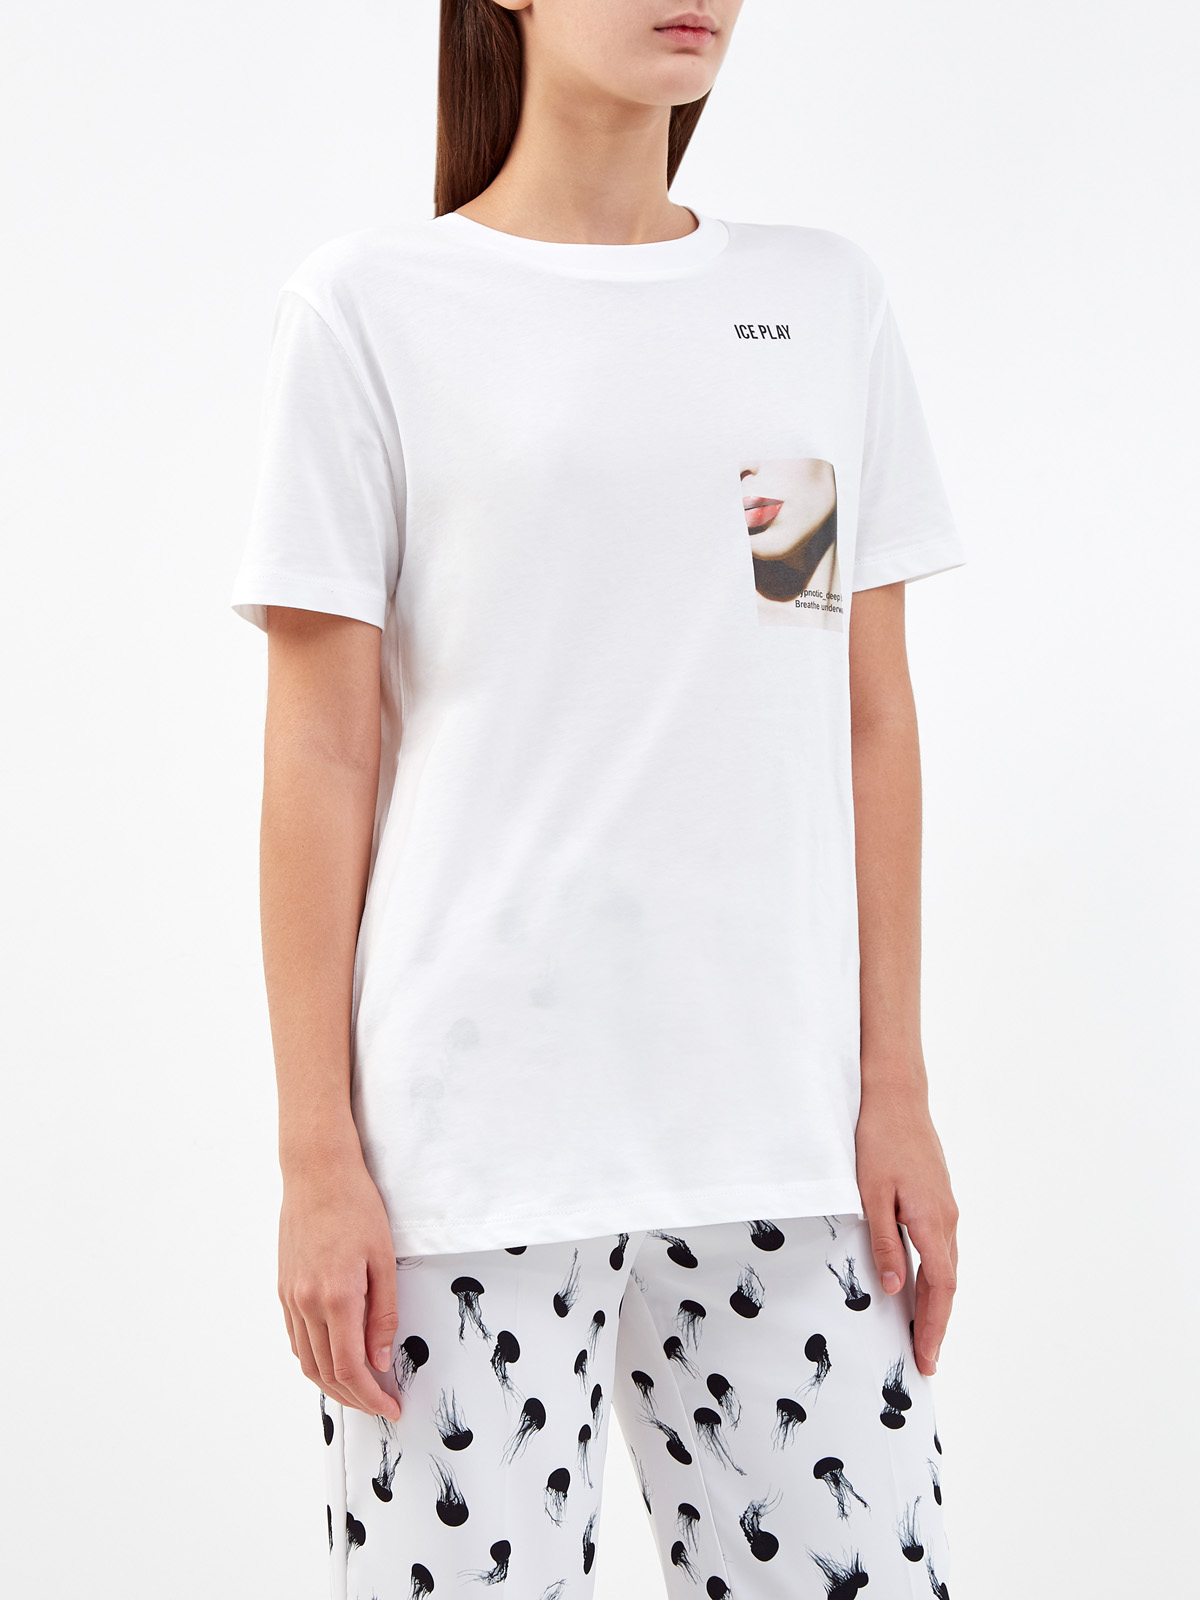 Хлопковая футболка свободного кроя с принтом ICE PLAY, цвет белый, размер XS;S;M;L - фото 3